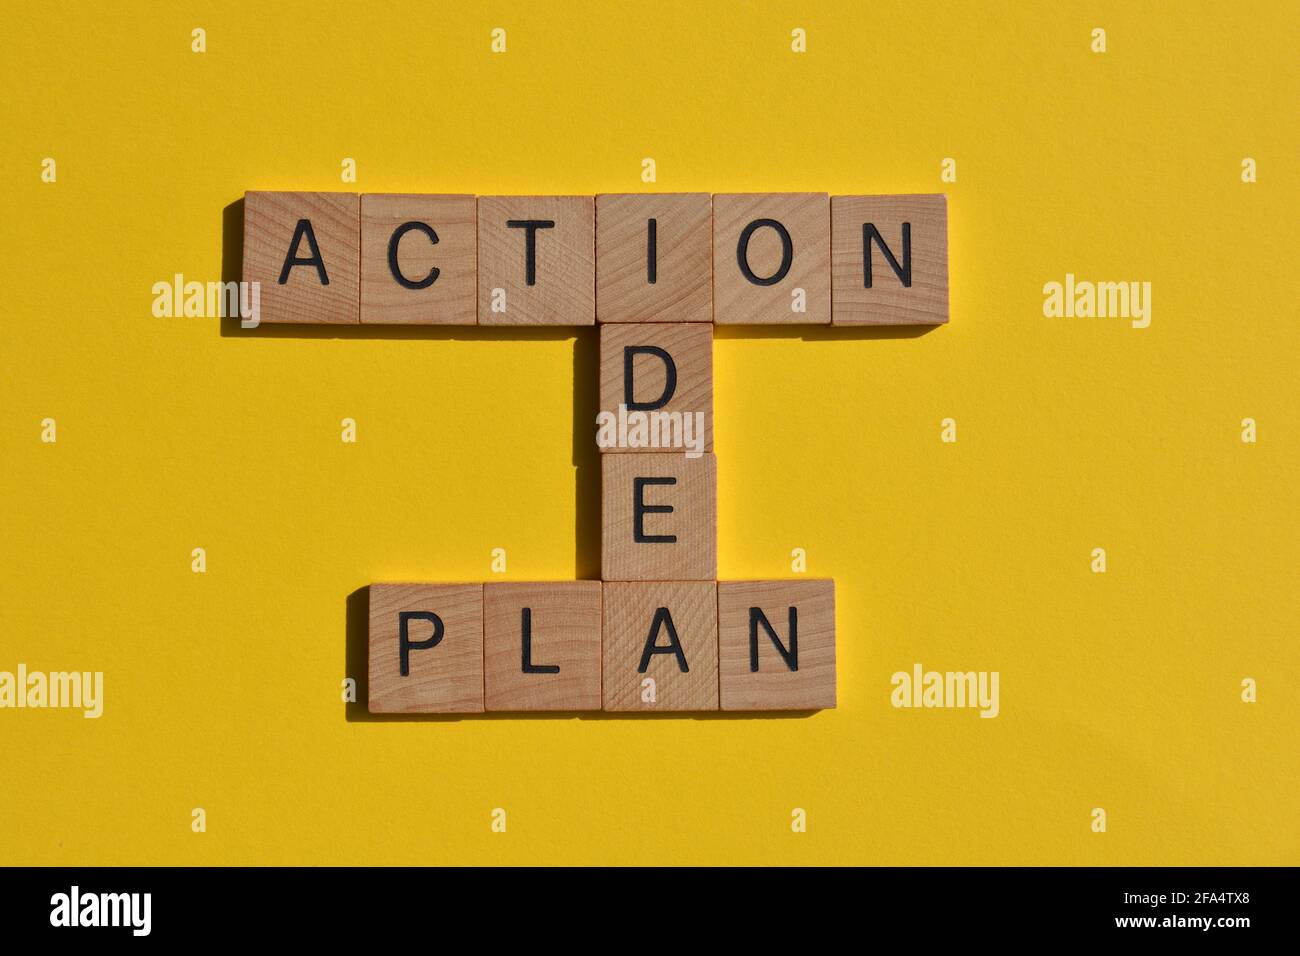 Idée, Plan, action, expression de motivation en lettres de l'alphabet en bois en mots croisés Banque D'Images